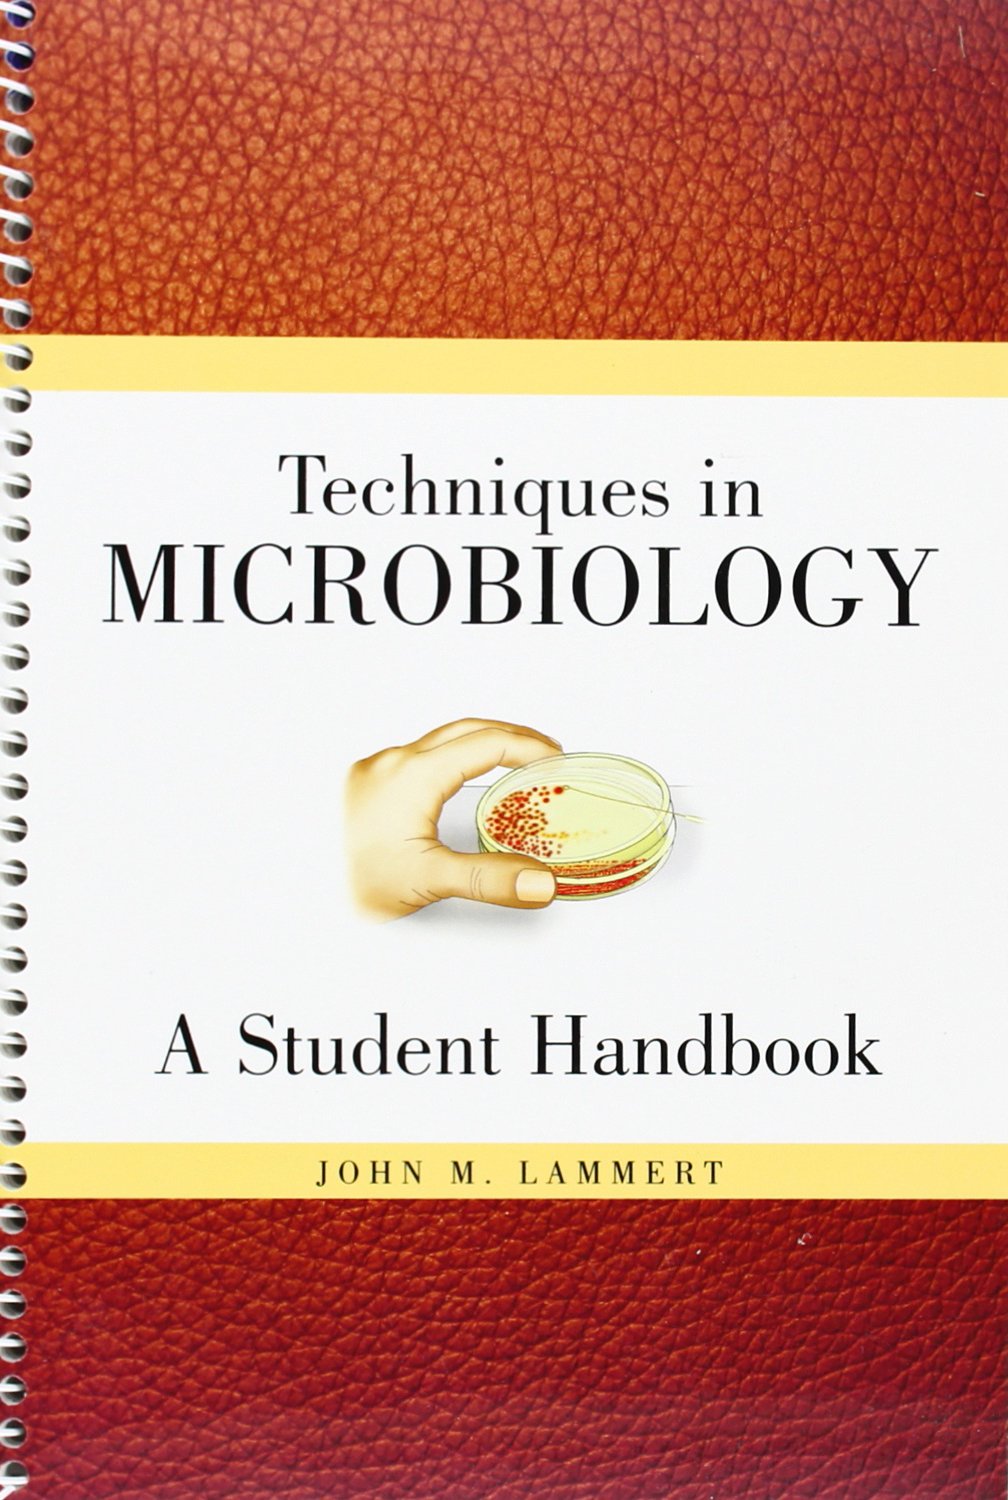 techniques in microbiology a student handbook lammert pdf writer